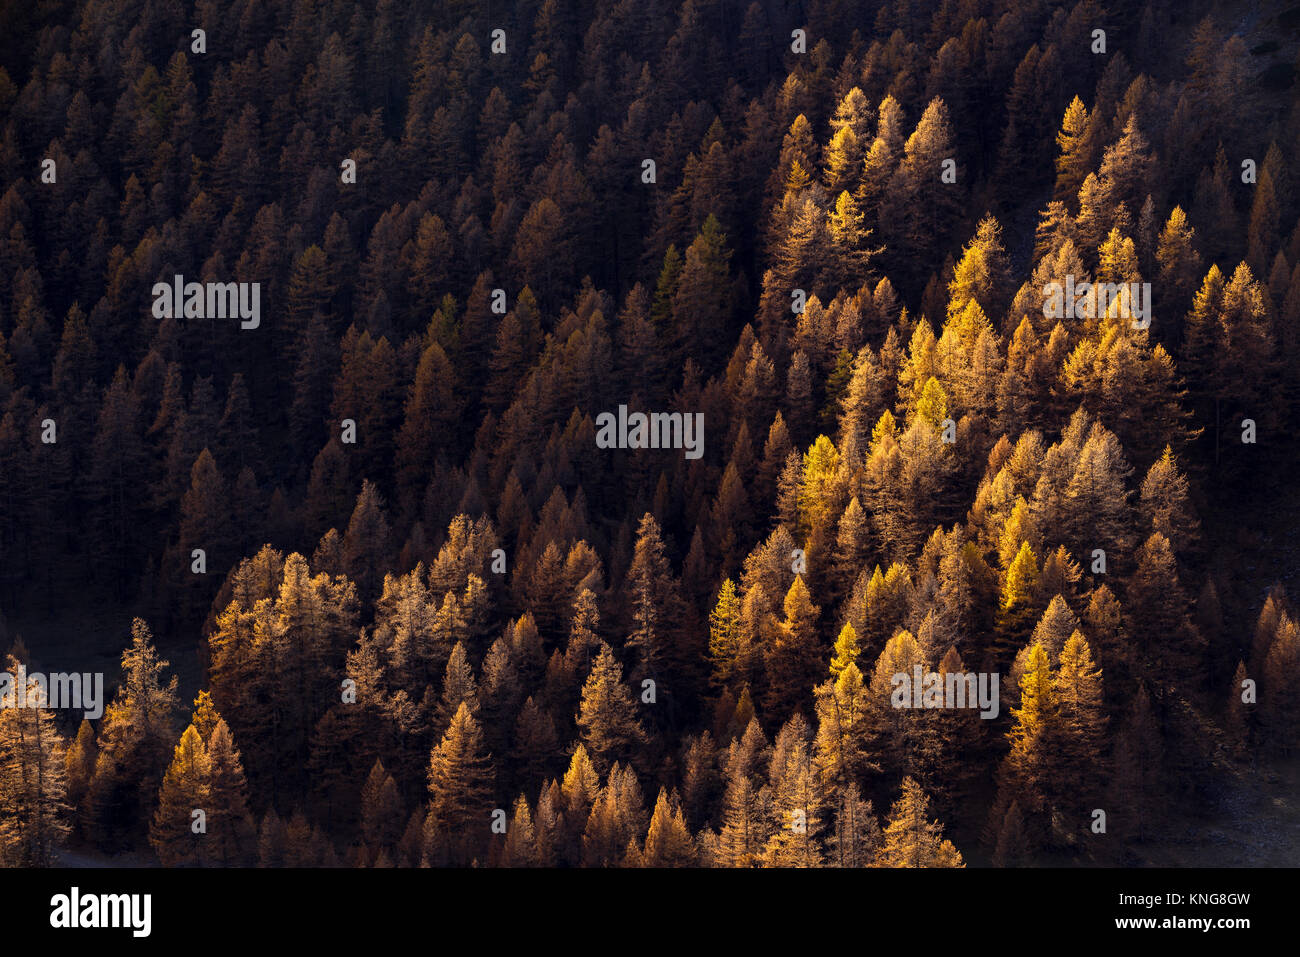 Forêt de mélèzes à l'automne avec les derniers rayons du soleil. Parc Naturel Régional du Queyras, Hautes-Alpes, Alpes, France Banque D'Images